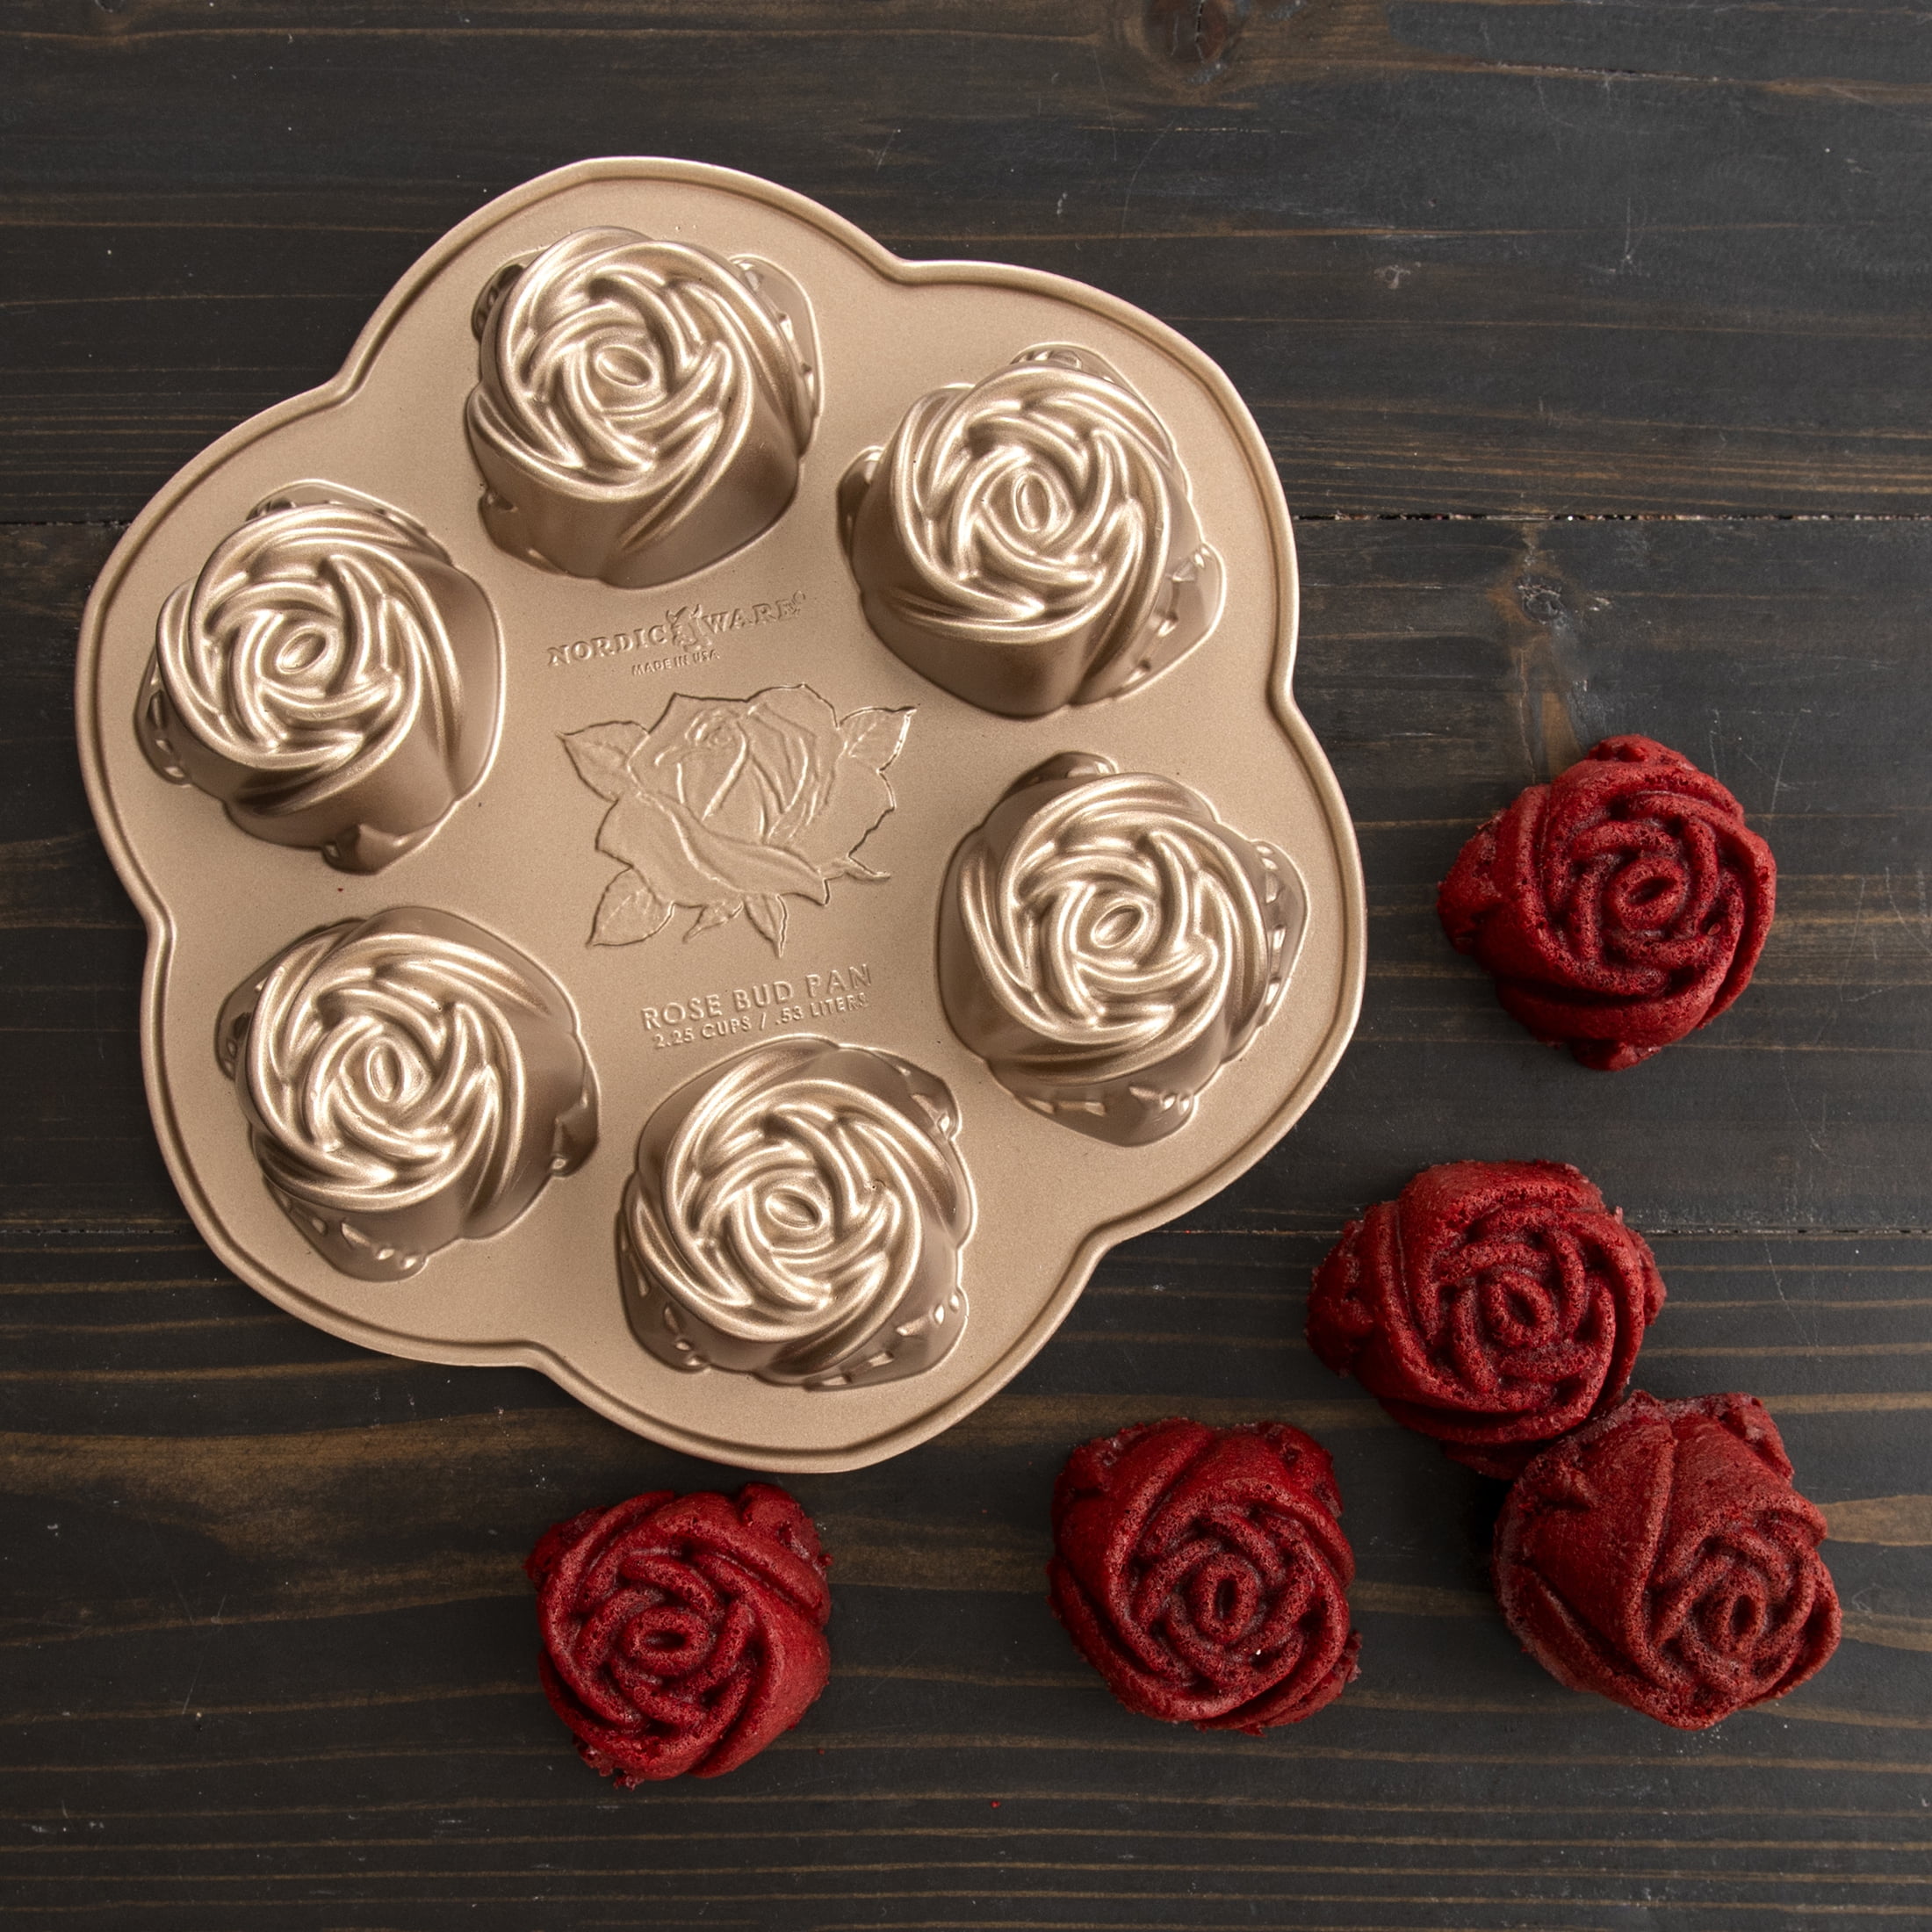 Nordic Ware Rosebud Cake Pan - 9533056